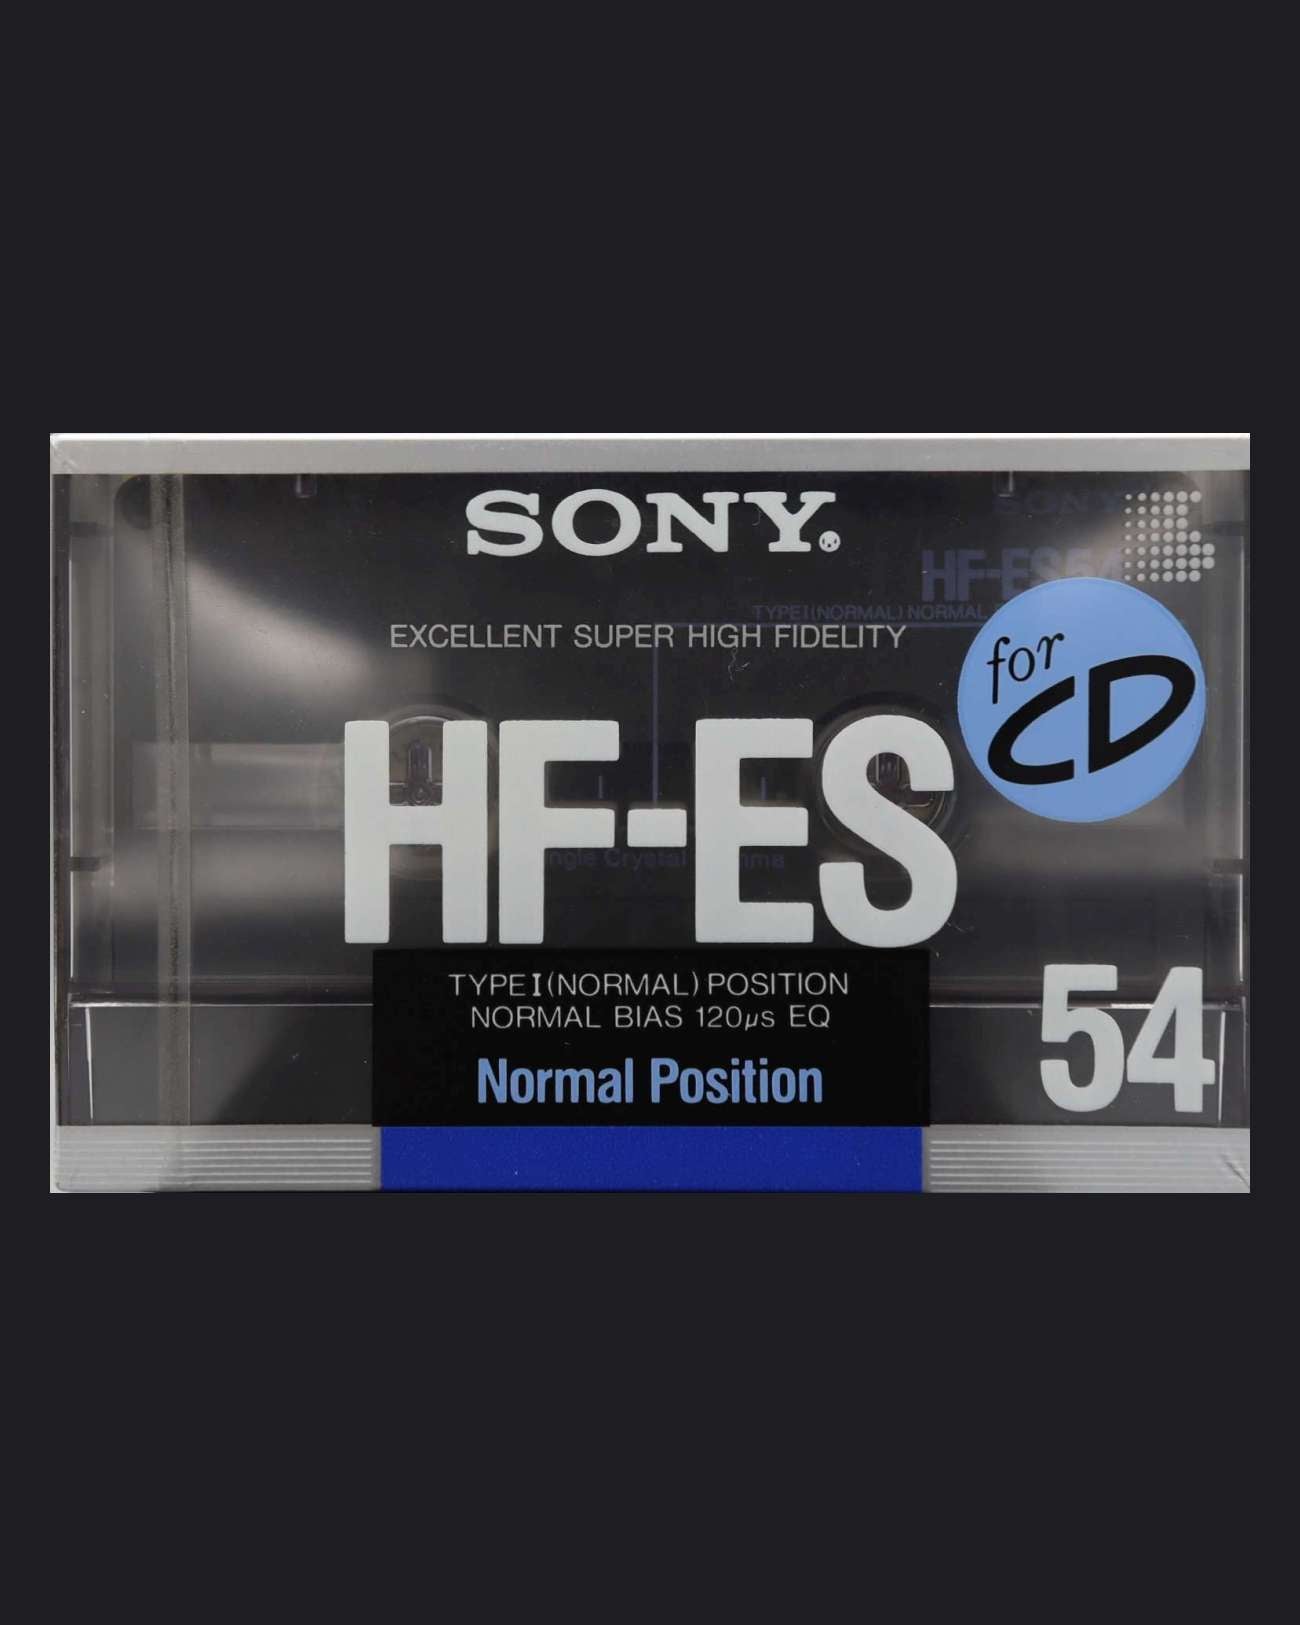 Sony HF-ES (1988 JP)